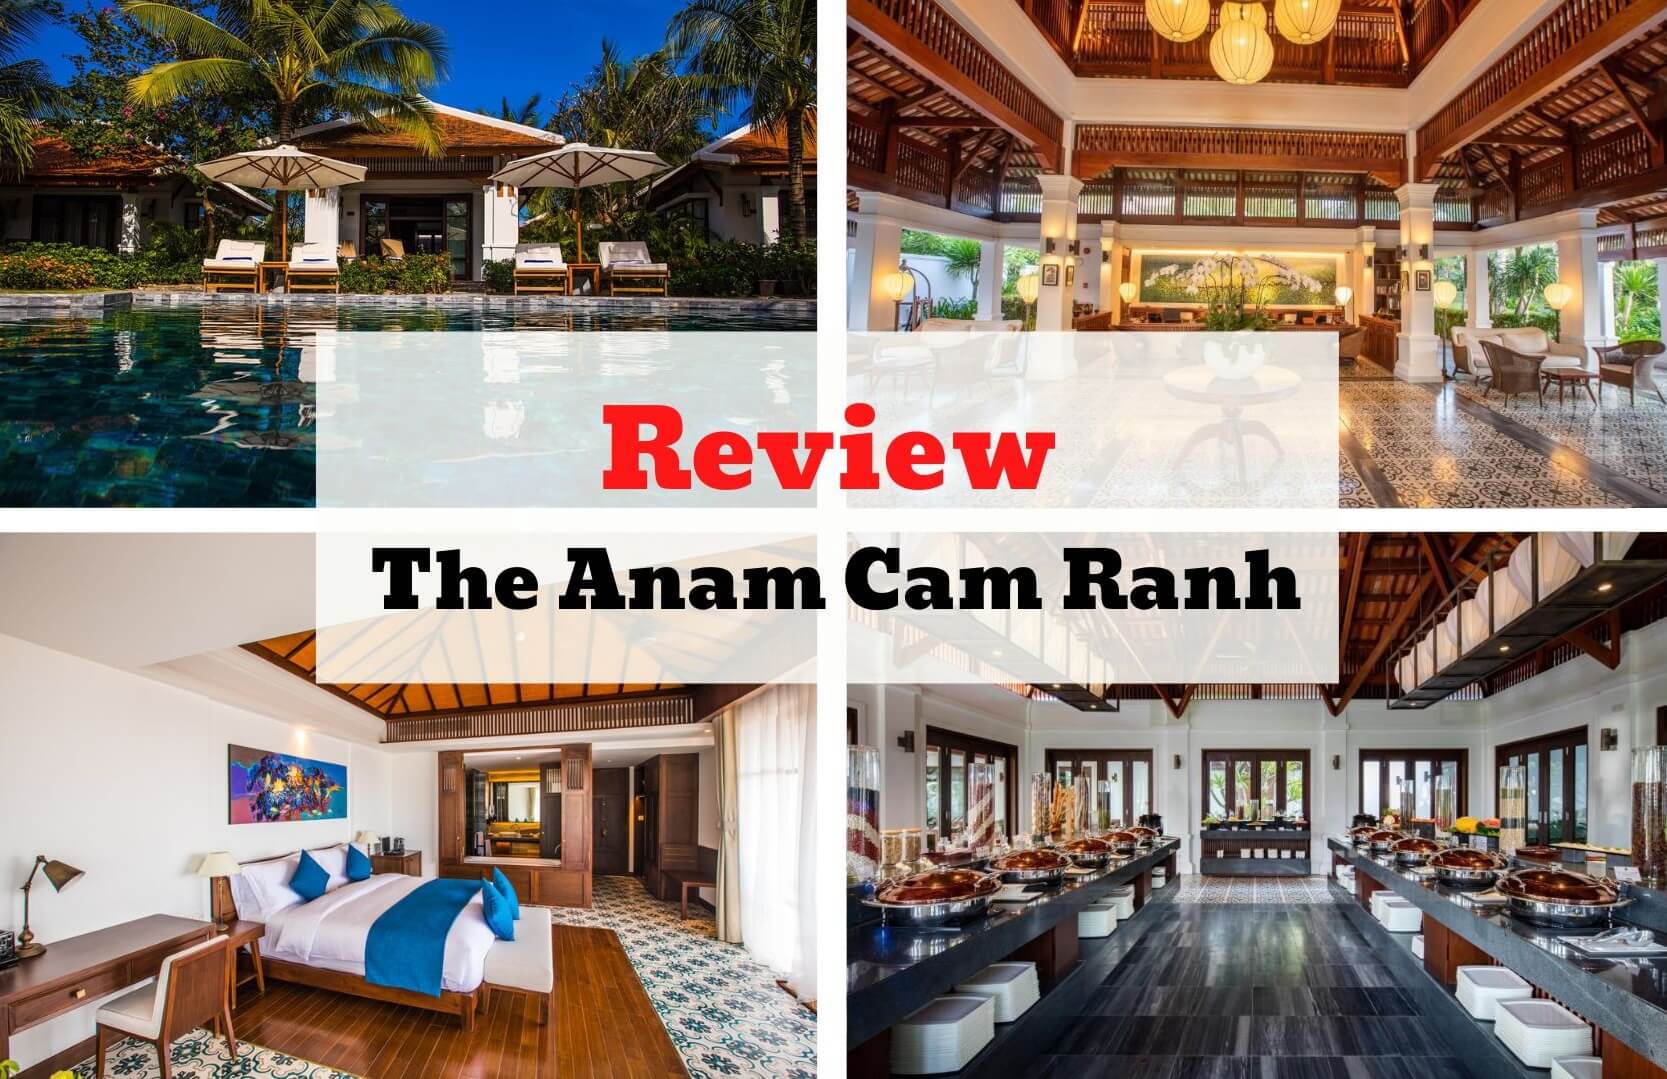 Review The Anam Cam Ranh - Kiến trúc Indochine hòa quyện cùng nét đẹp hiện đại